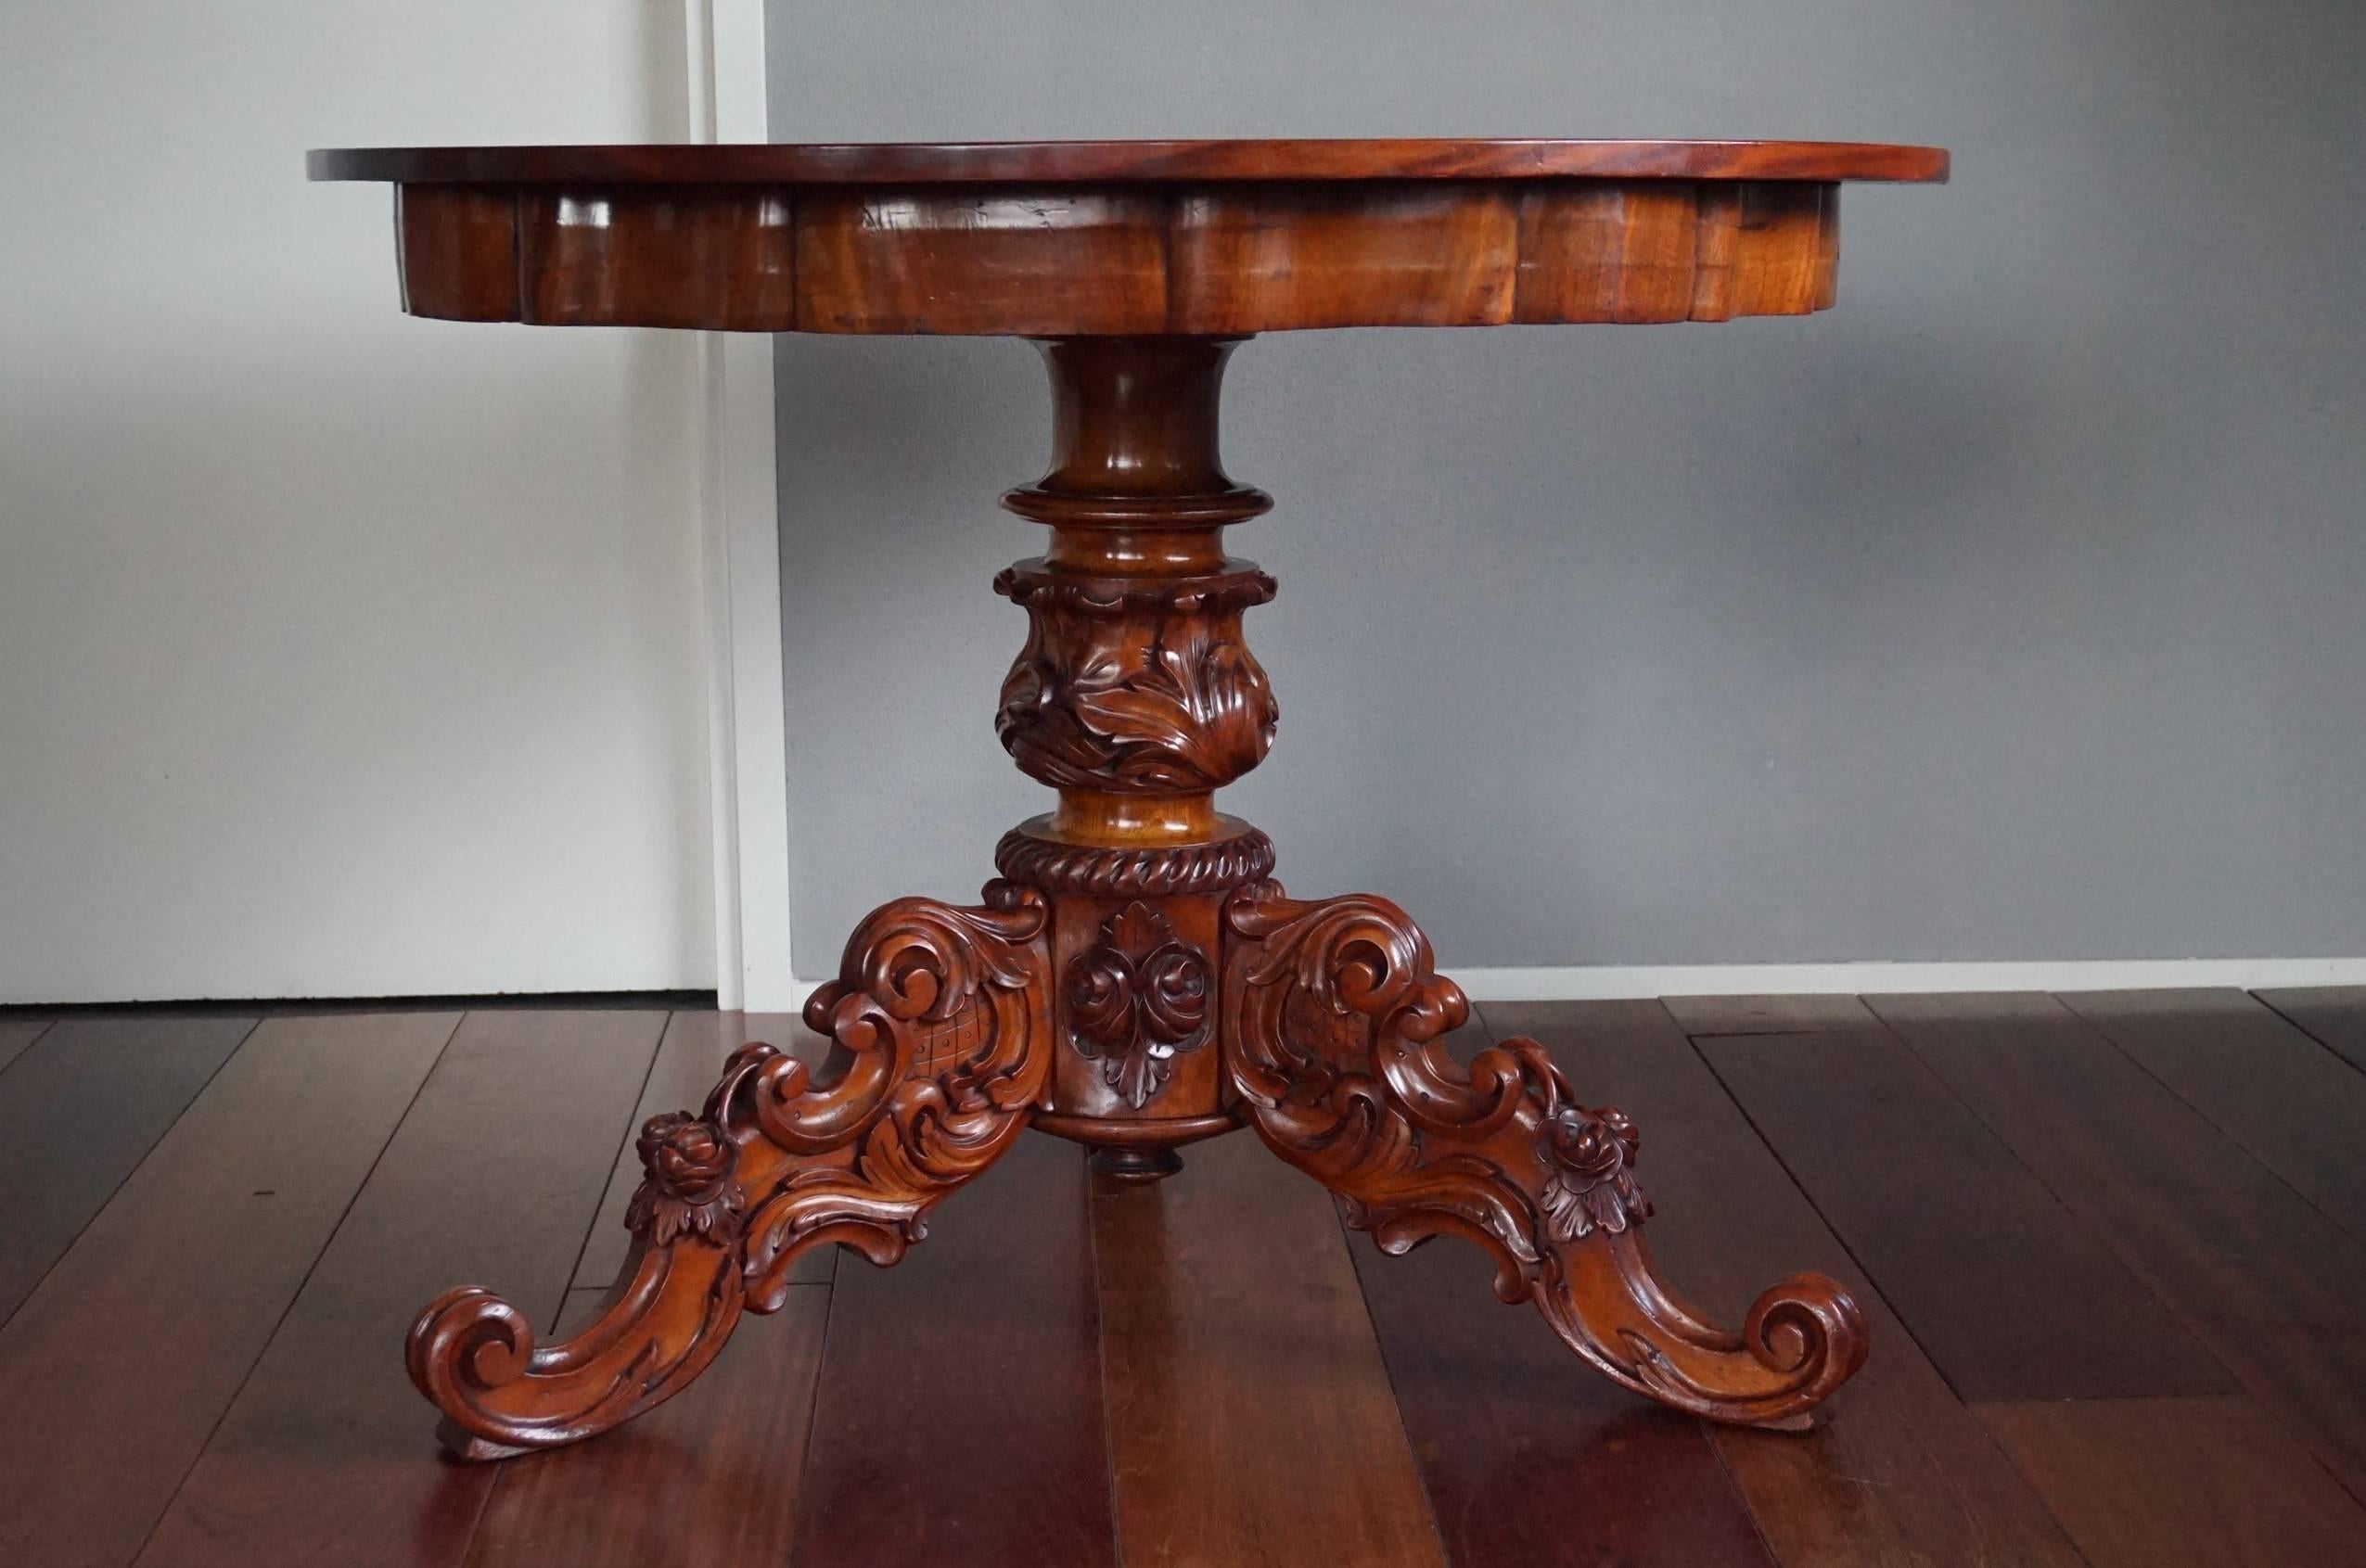 Impressionnante table à manger ancienne.

Cette remarquable table de salle à manger ou de centre en deux parties, datant du milieu du XIXe siècle, est d'une forme et d'une couleur magnifiques. La base en bois massif, sculptée à la main, avec les